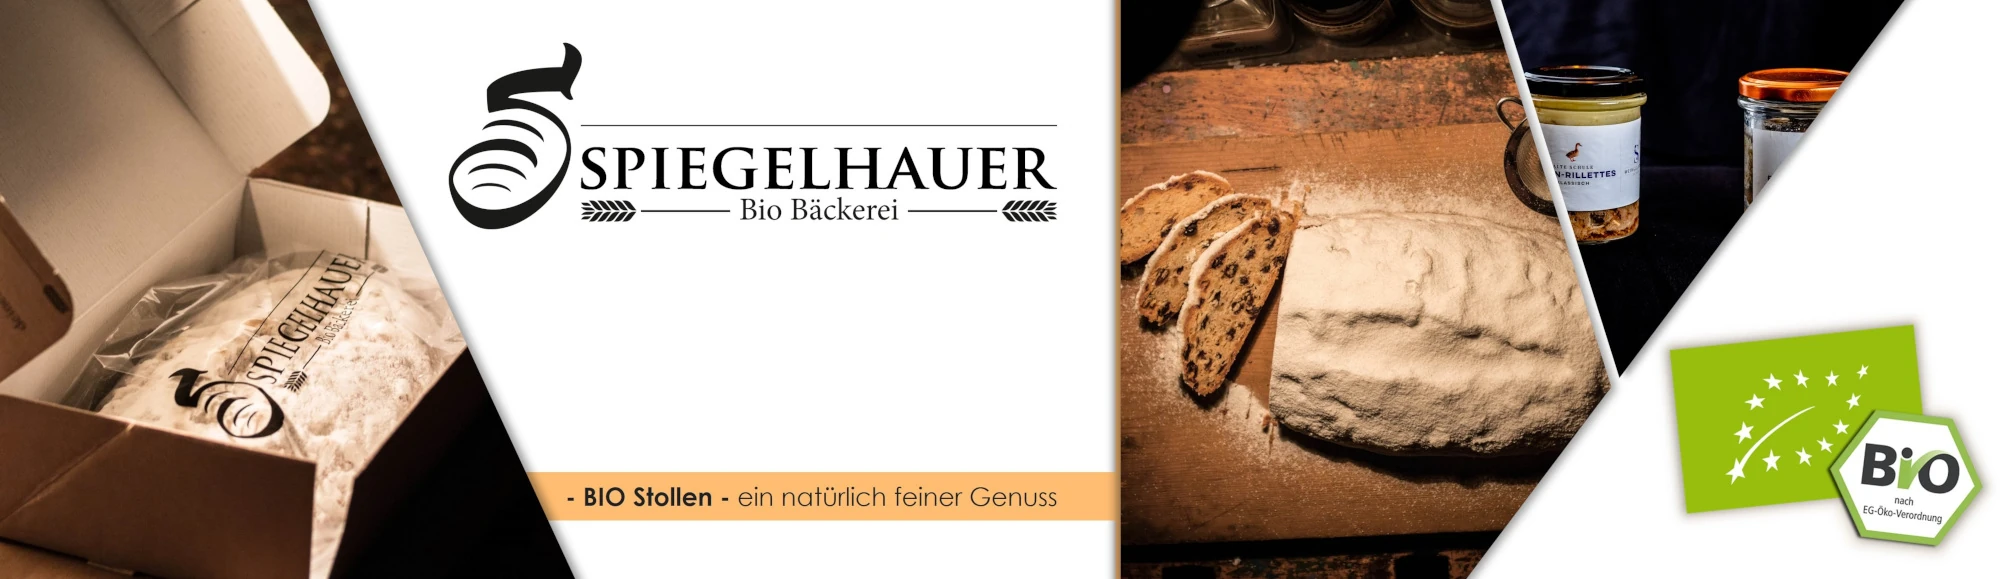 Bäckerei Spiegelhauer im Dresden Onlineshop entdecken